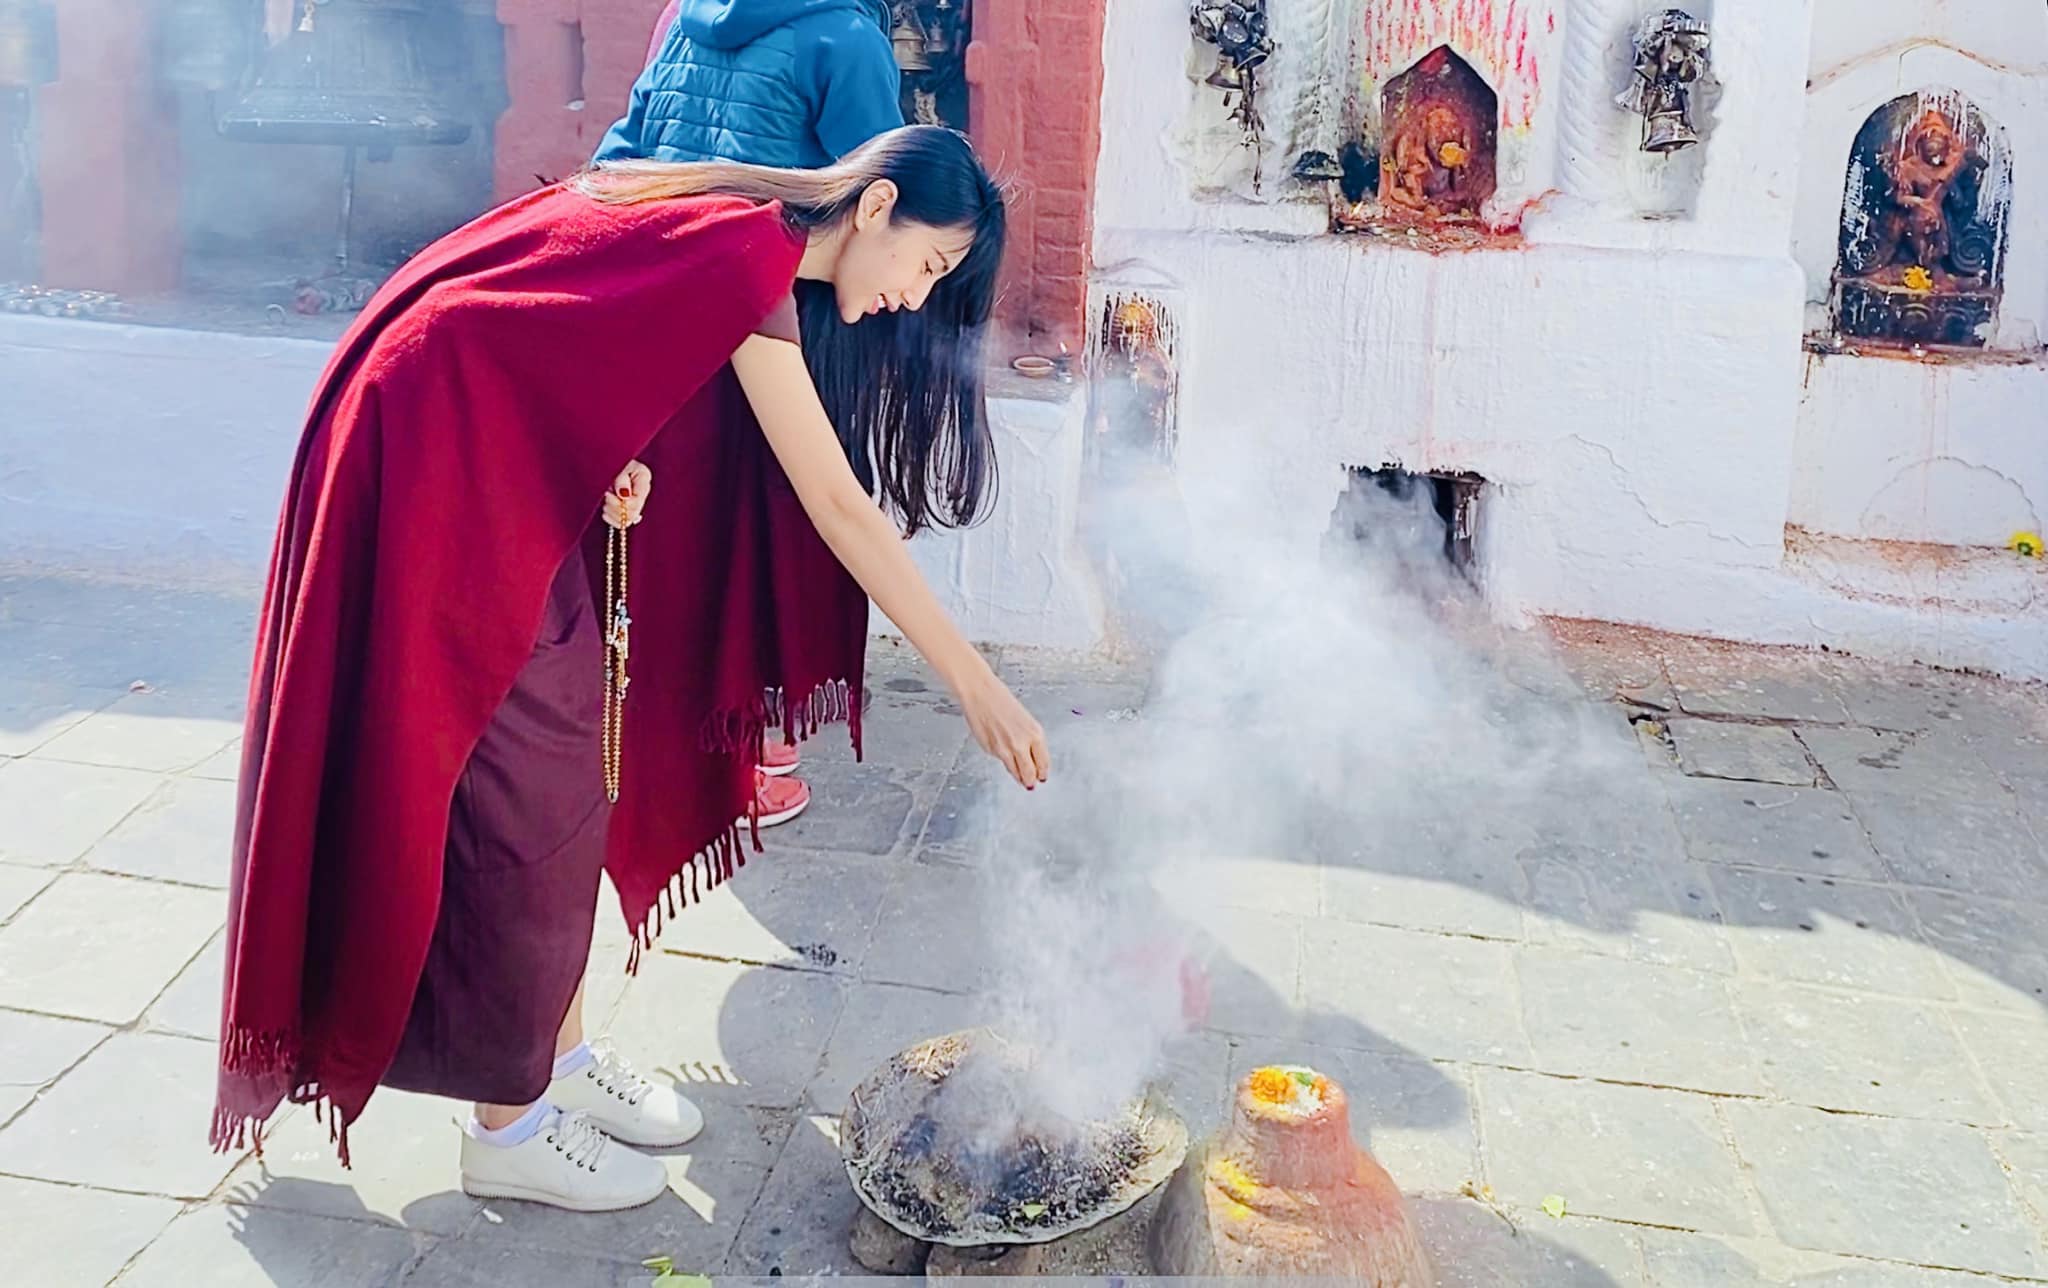 Thủy Tiên chia sẻ hình ảnh tu tập bình yên tại Bhutan, tiết lộ tâm trạng sau hàng loạt scandal